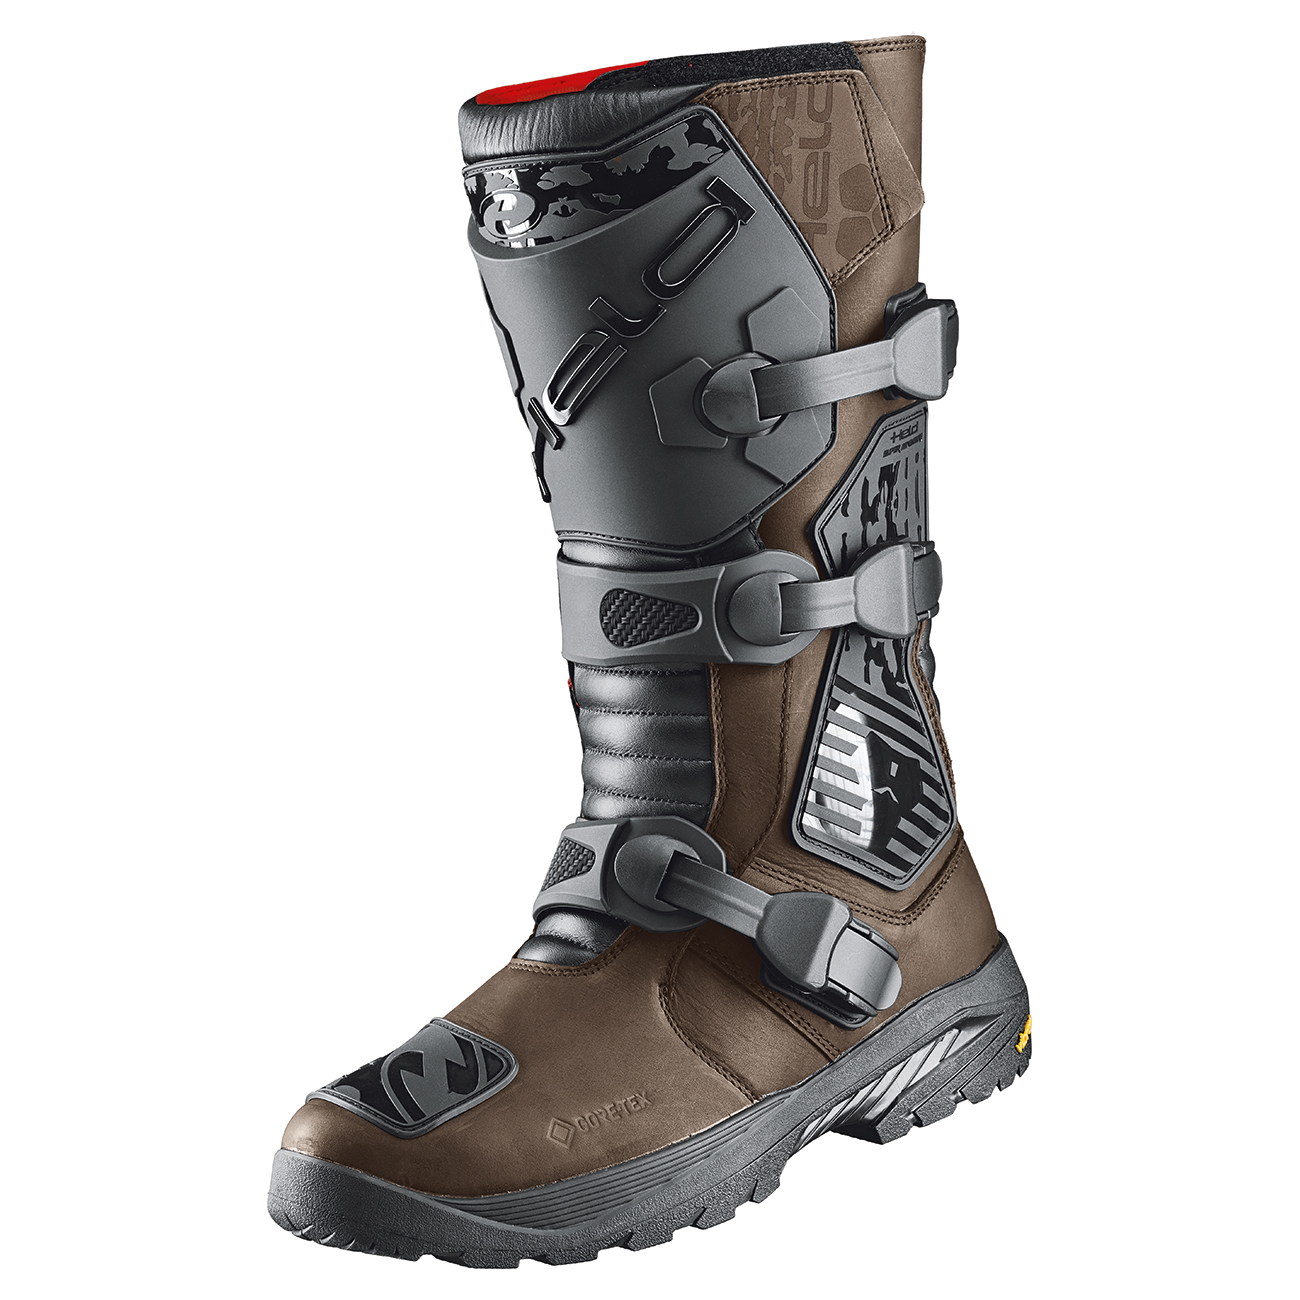 Brickland Gore-Tex boots